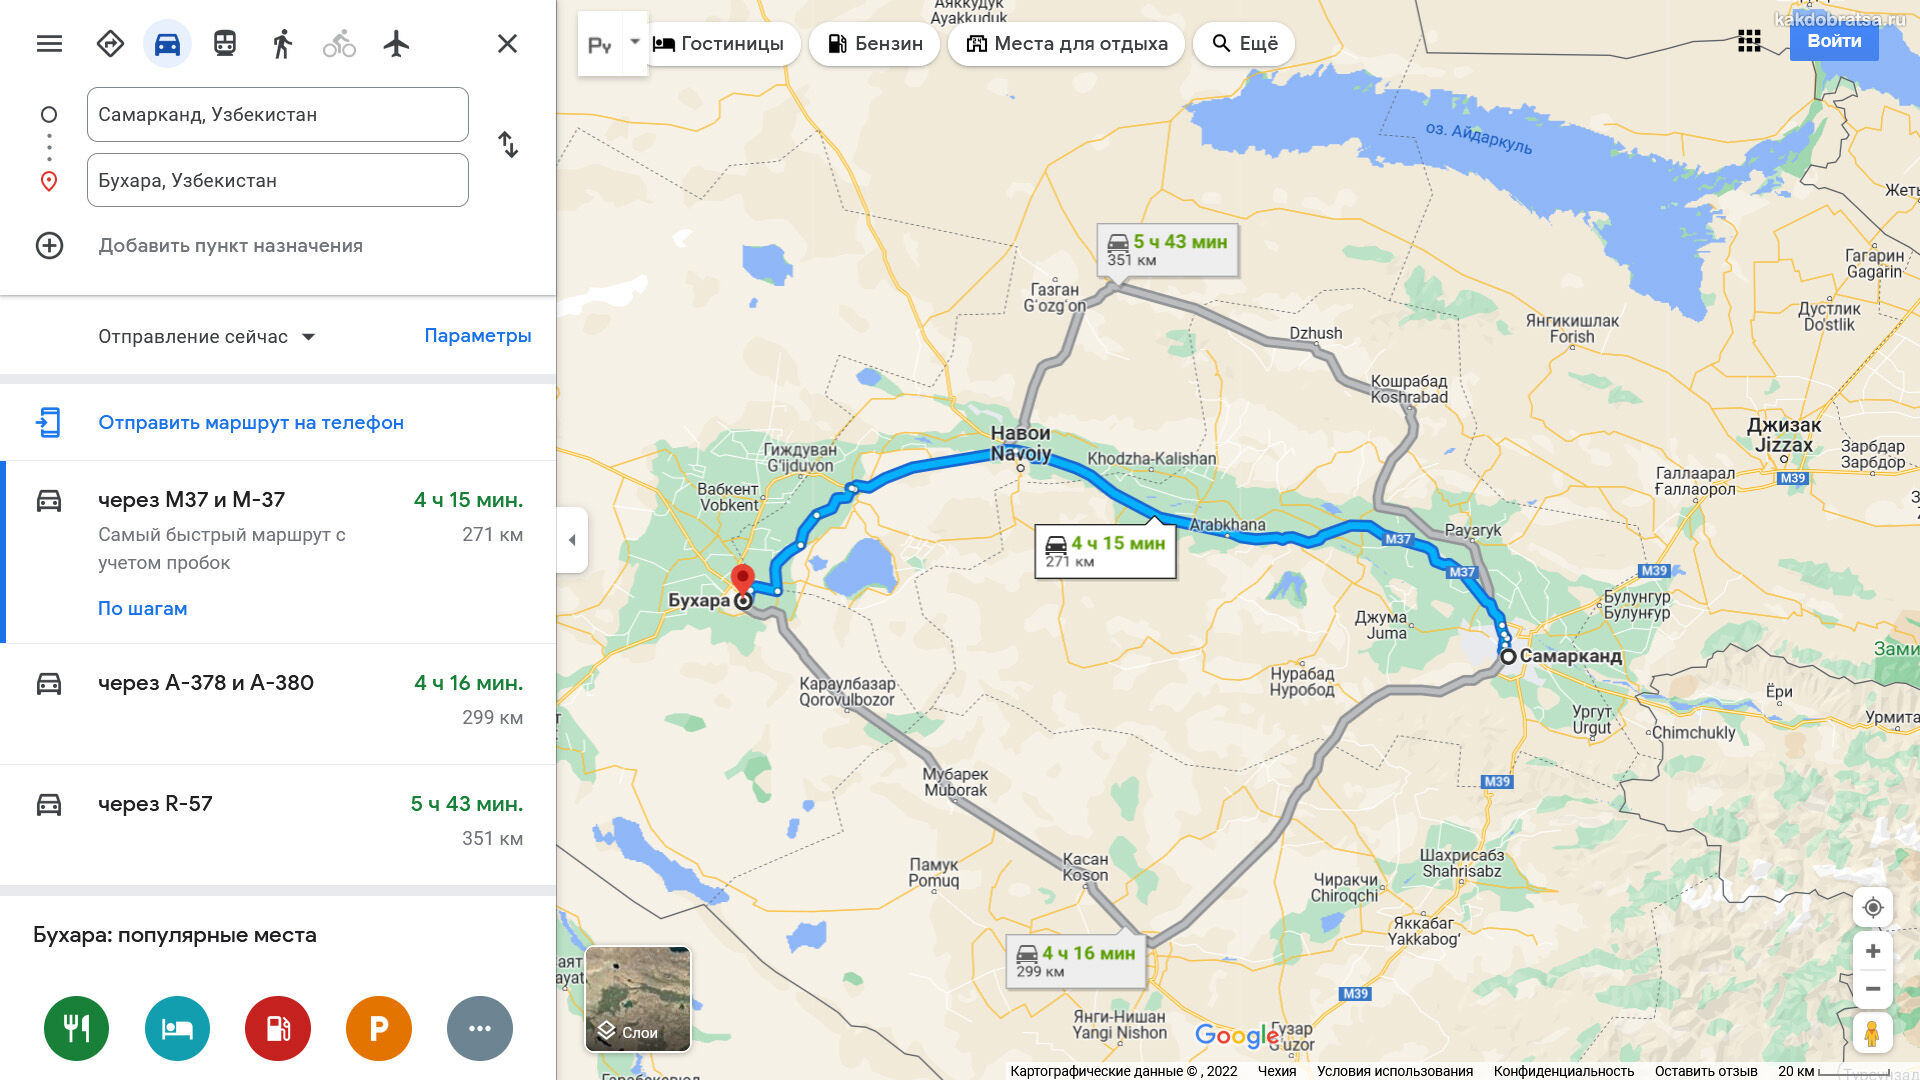 Расстояние между Самаркандом и Бухарой по карте